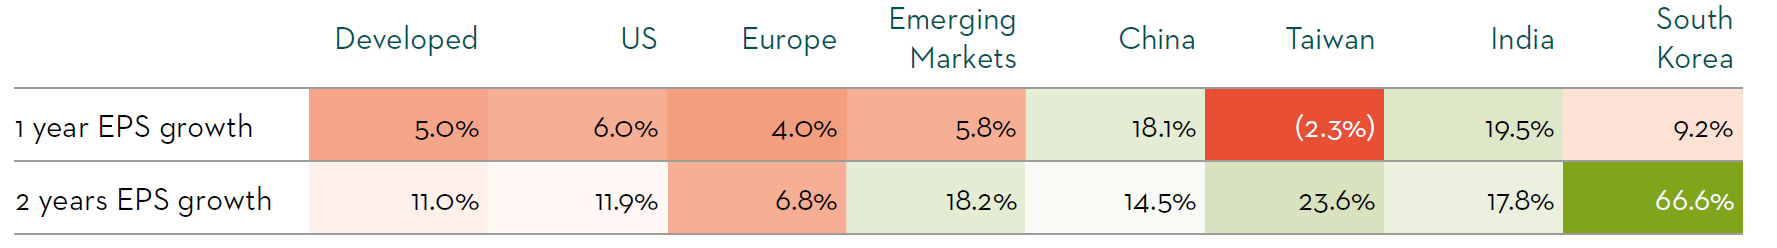 Figure 1: Forecast earnings growth across regions